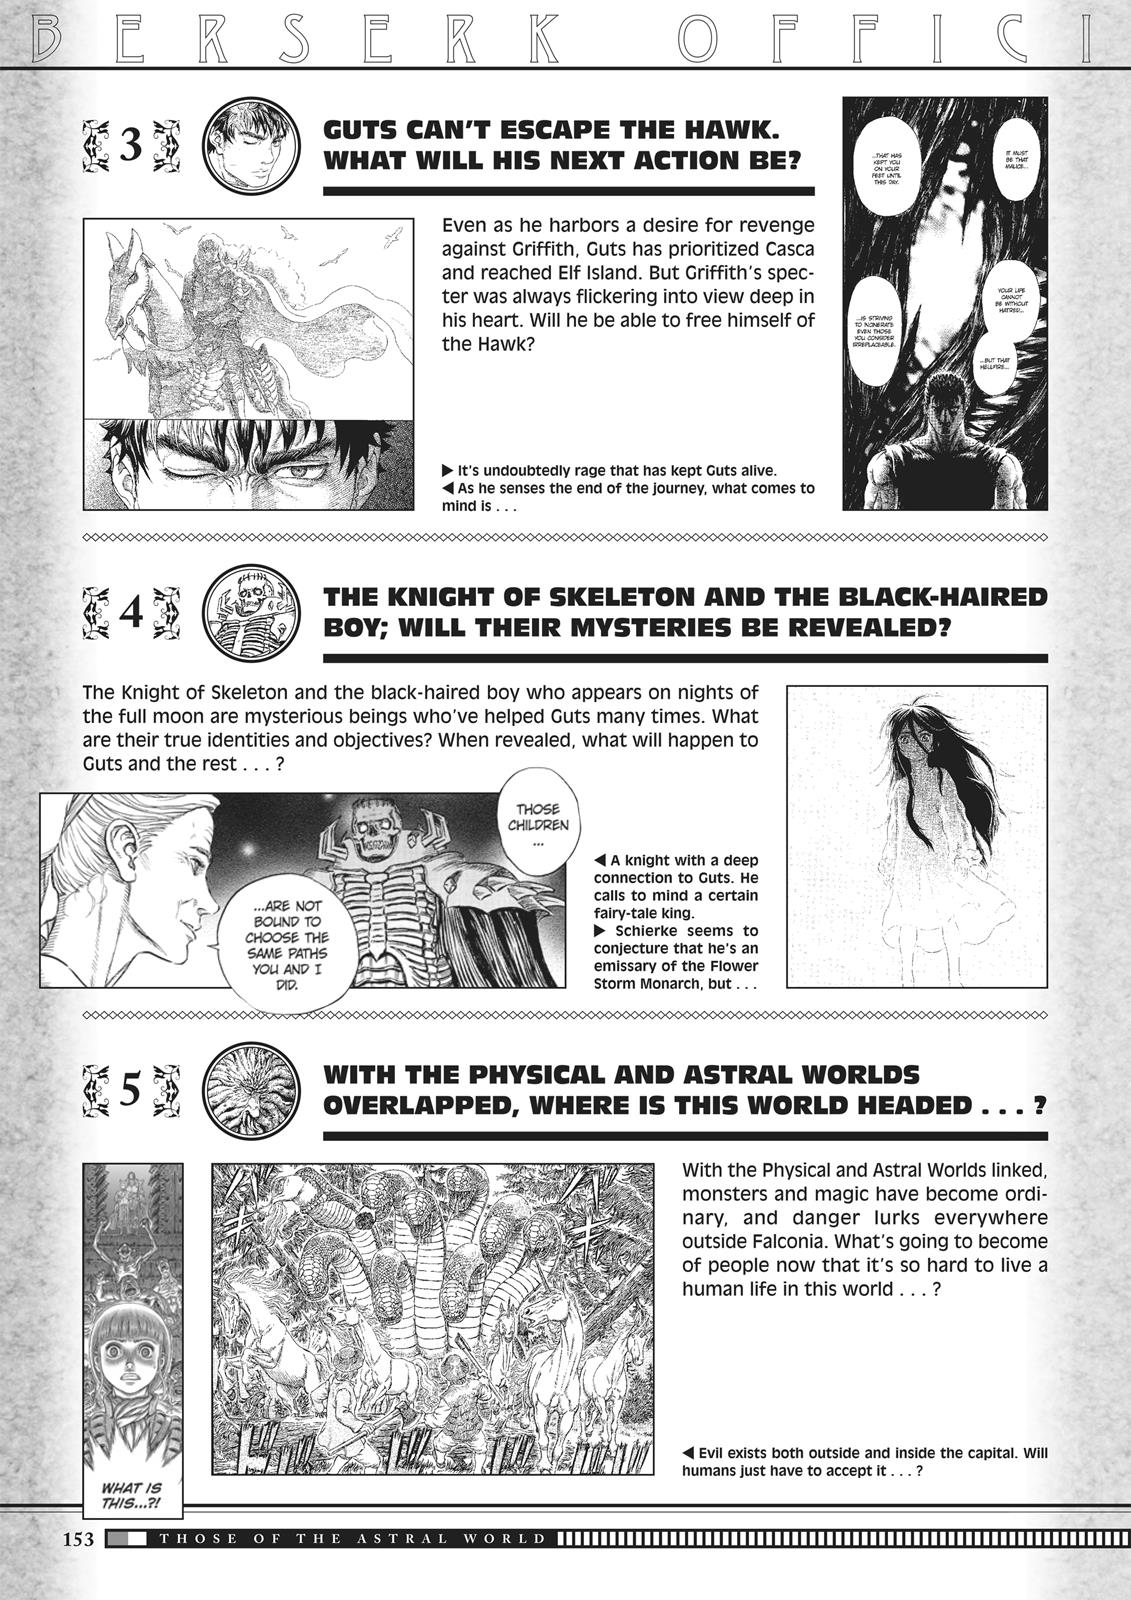 Berserk Manga Chapter 350.5 image 151